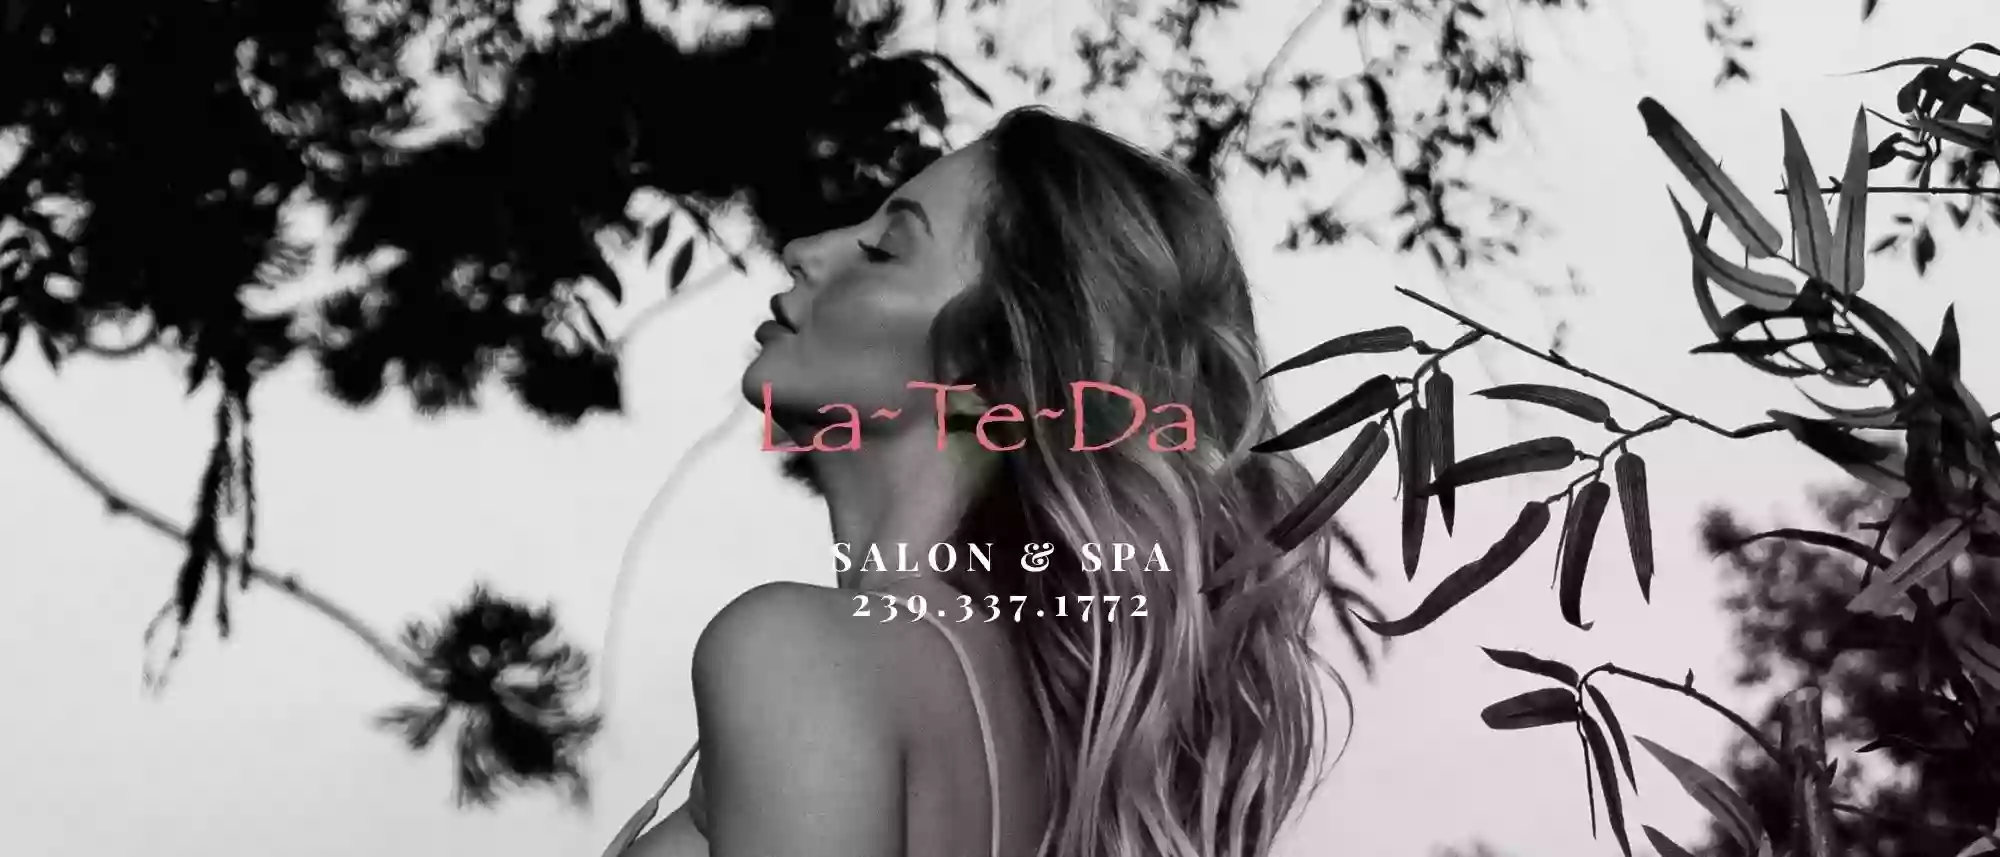 La-Te-Da Salon & Spa